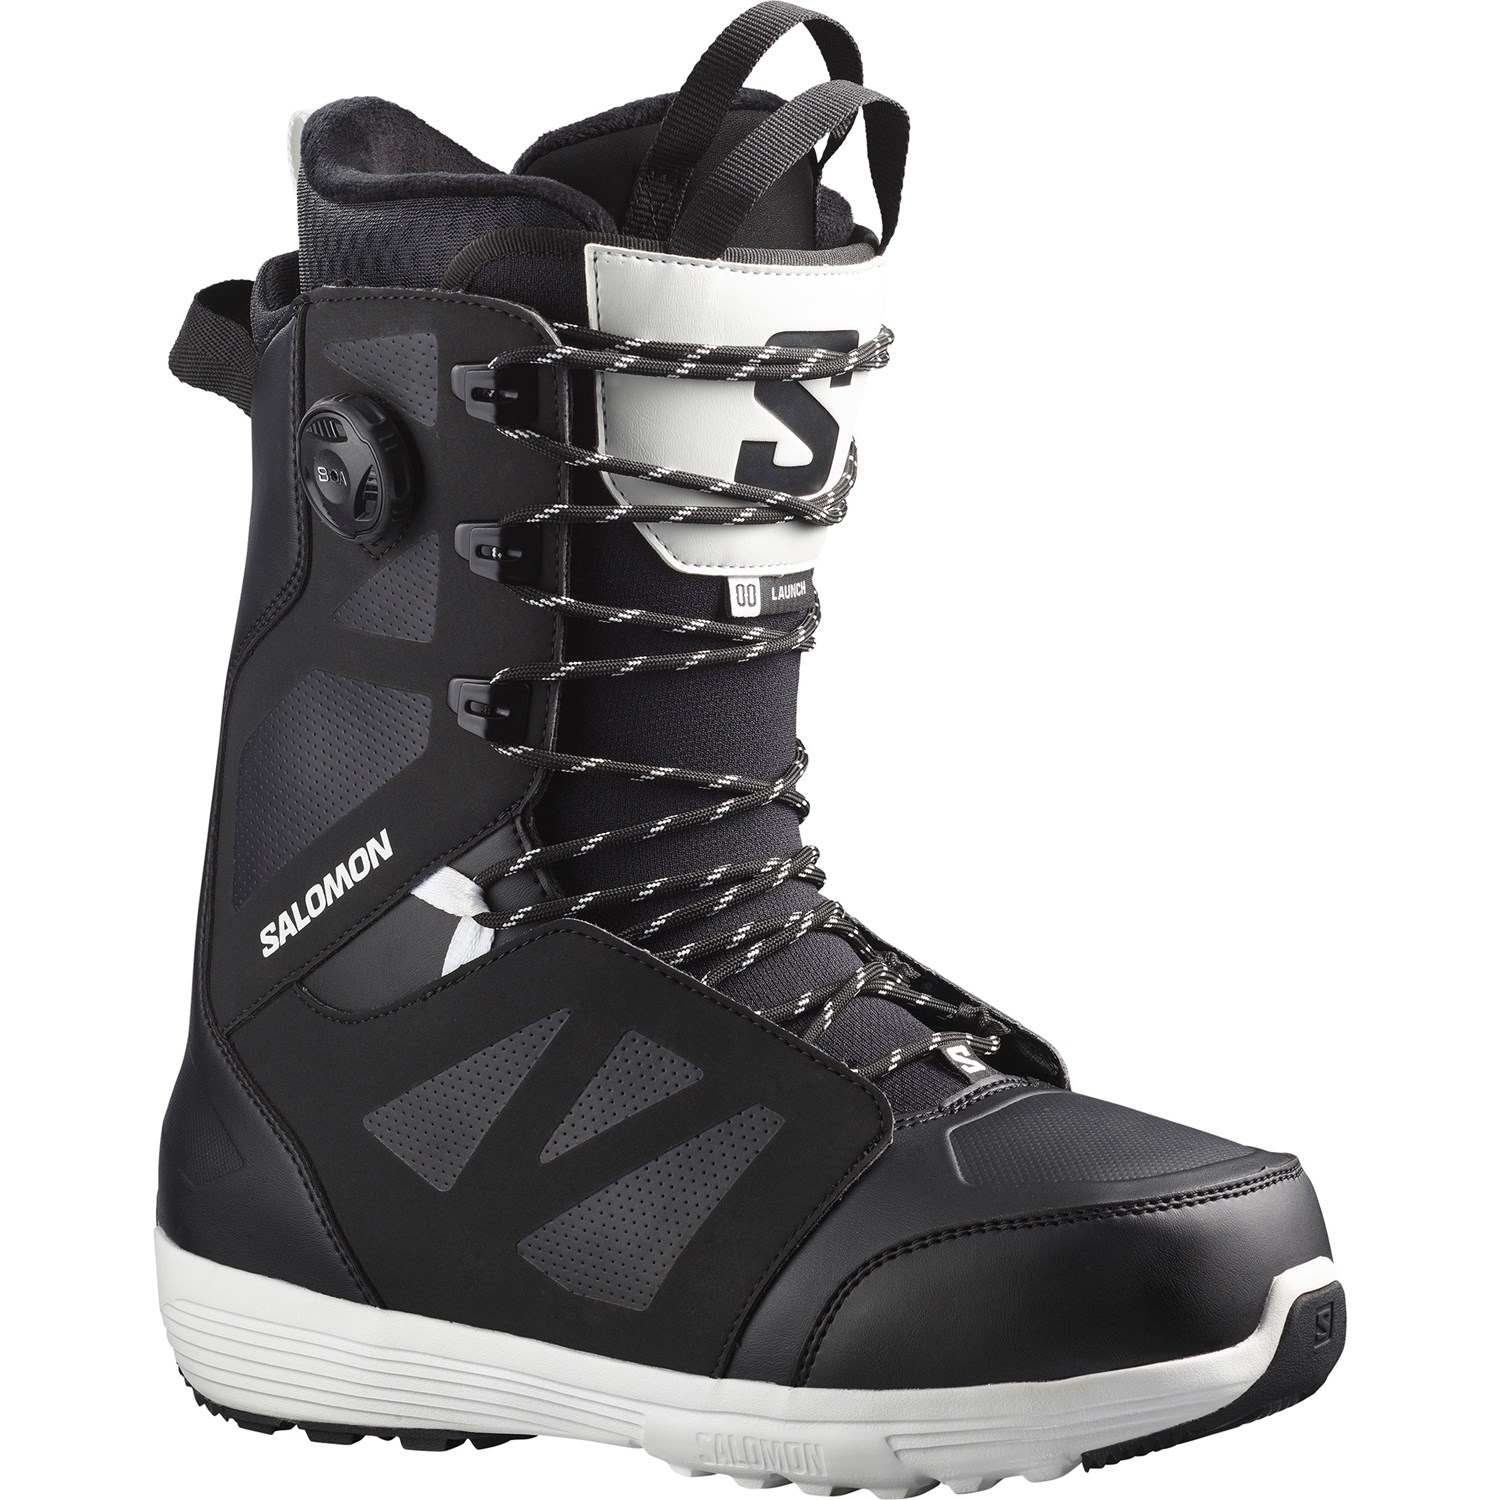 Salomon Launch SJ Boa Snowboard Boots | evo